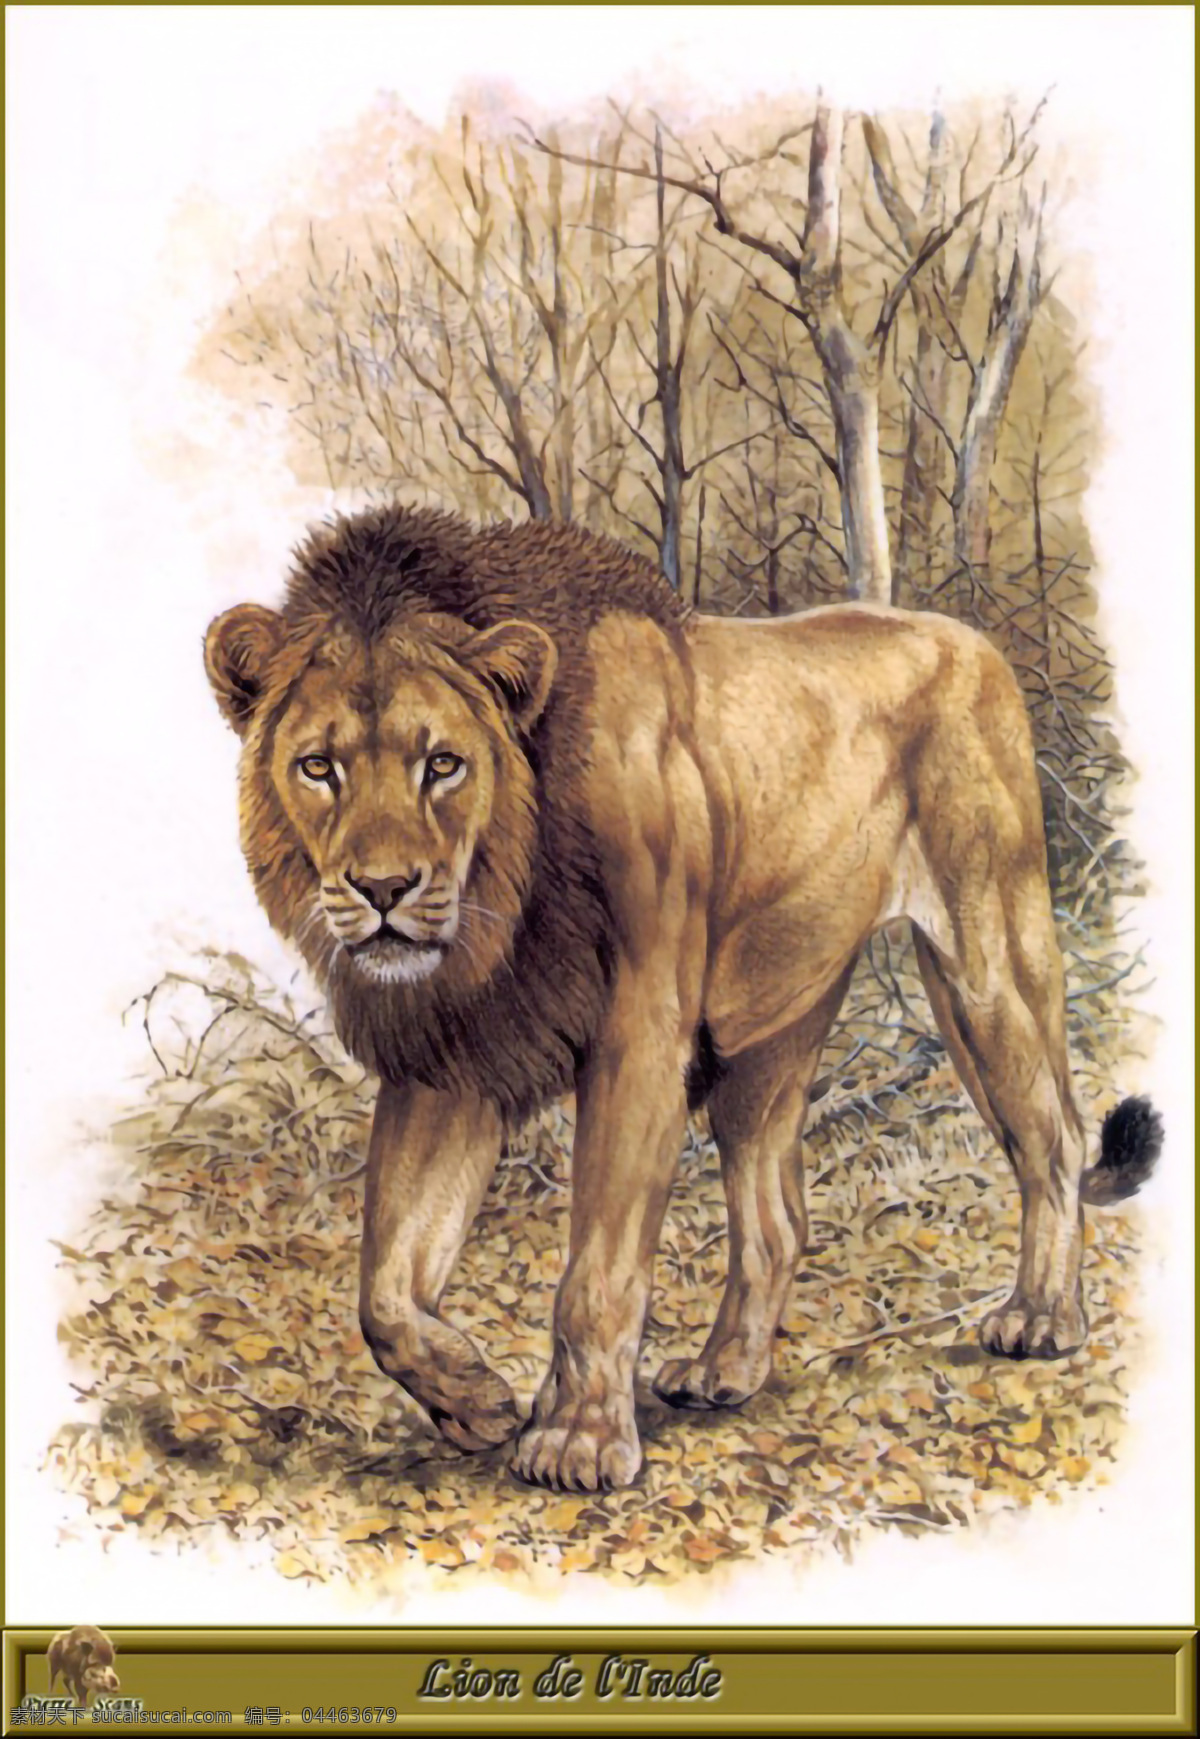 狮子图片 狮子 草地上的狮子 狮子毛 公狮子 生物世界 野生动物